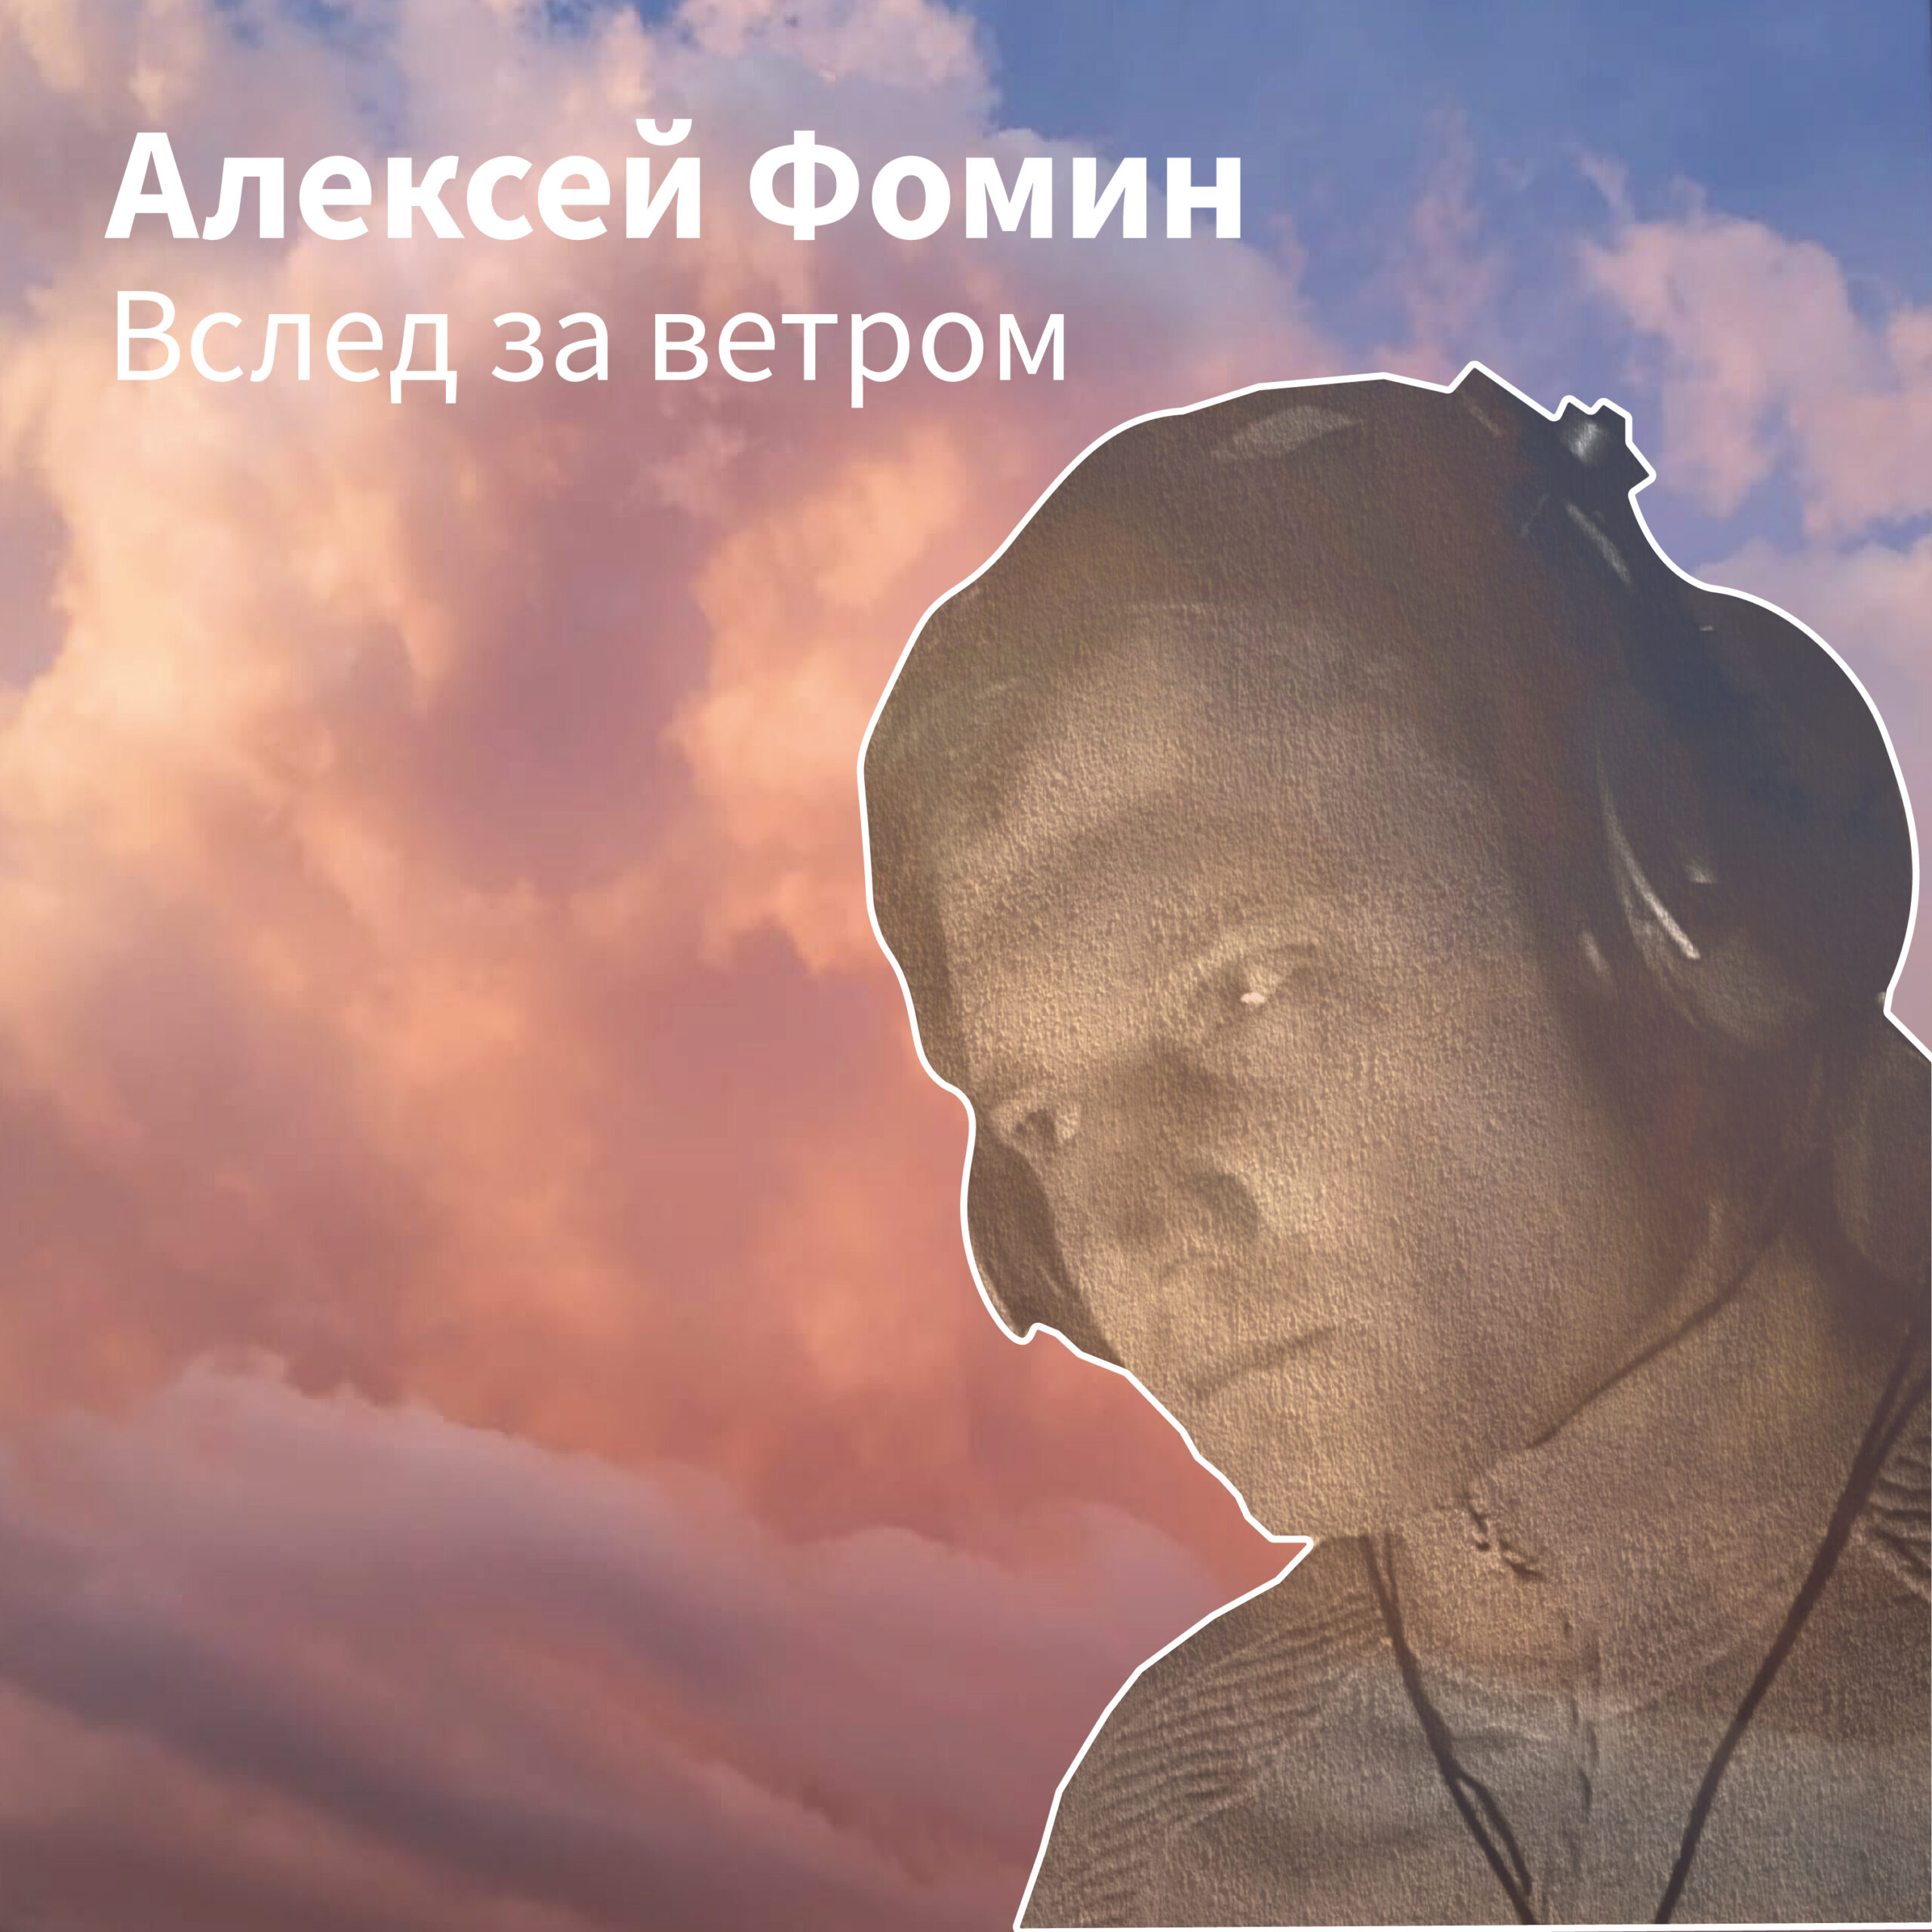 Новый трек Алексея Фомина Вслед за ветром выйдет от студии Extraphone в феврале 2022